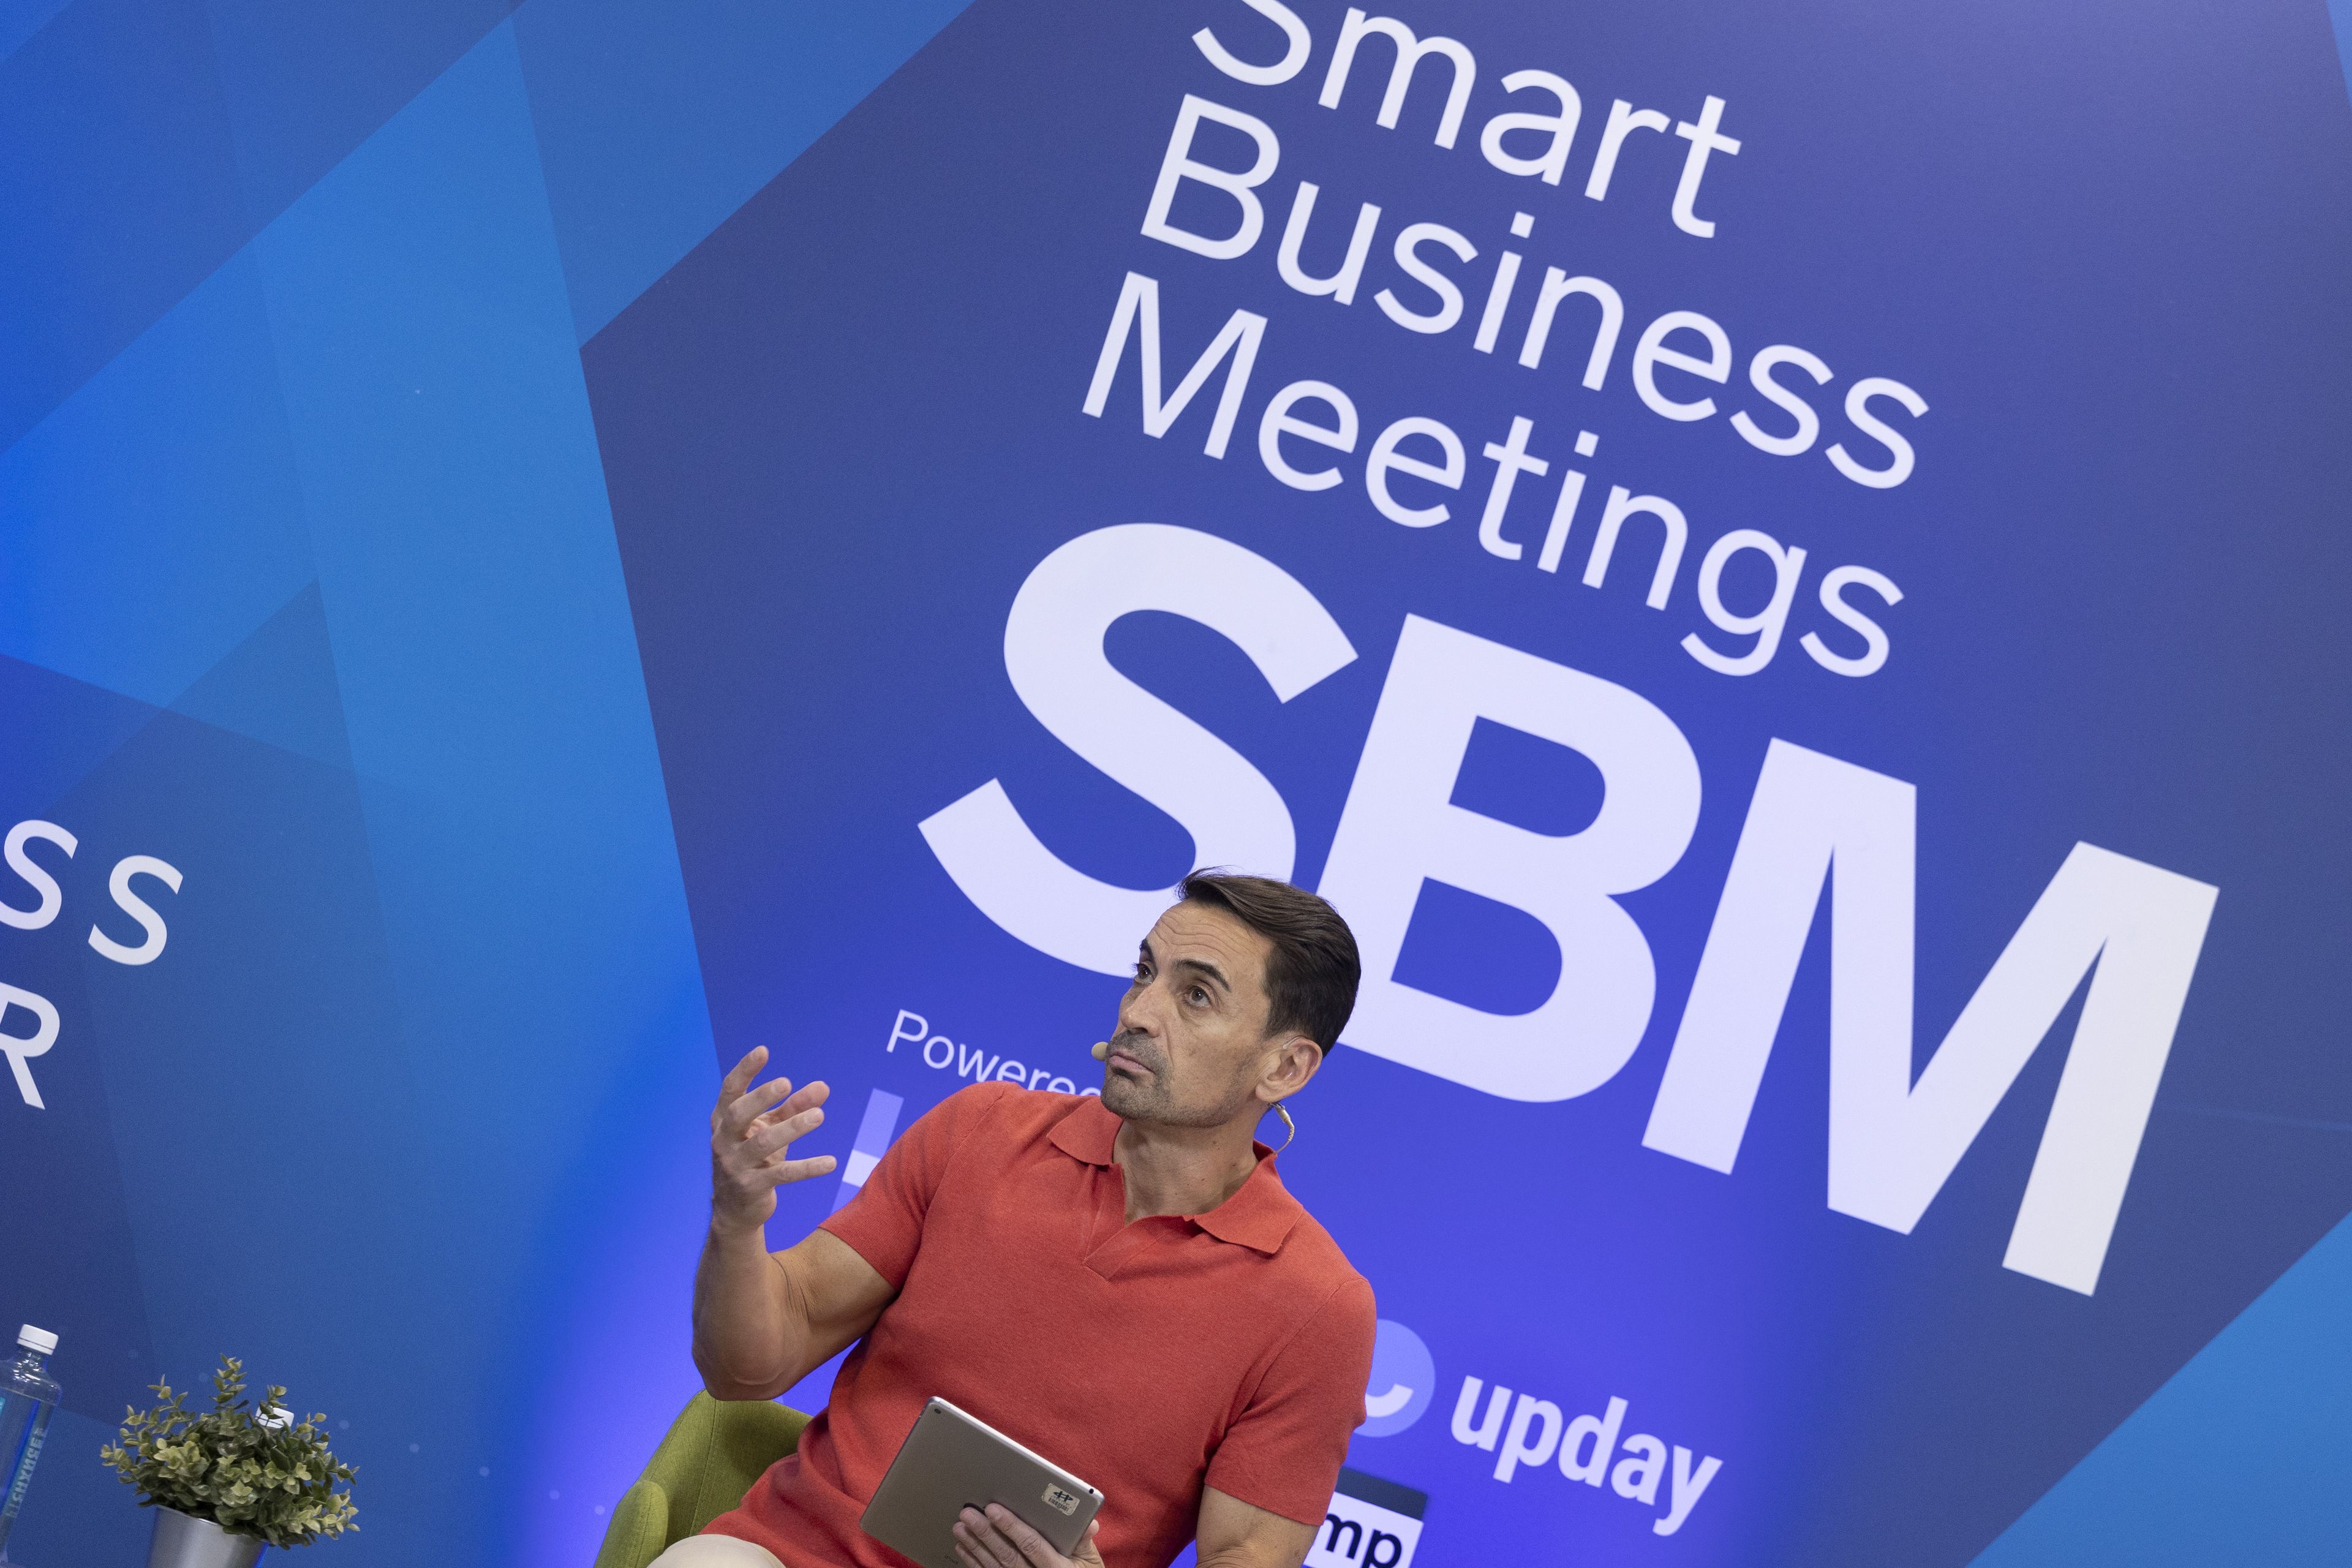 Manuel del Campo, CEO de Axel Springer España, durante la celebración del XXIV Smart Business Meeting.